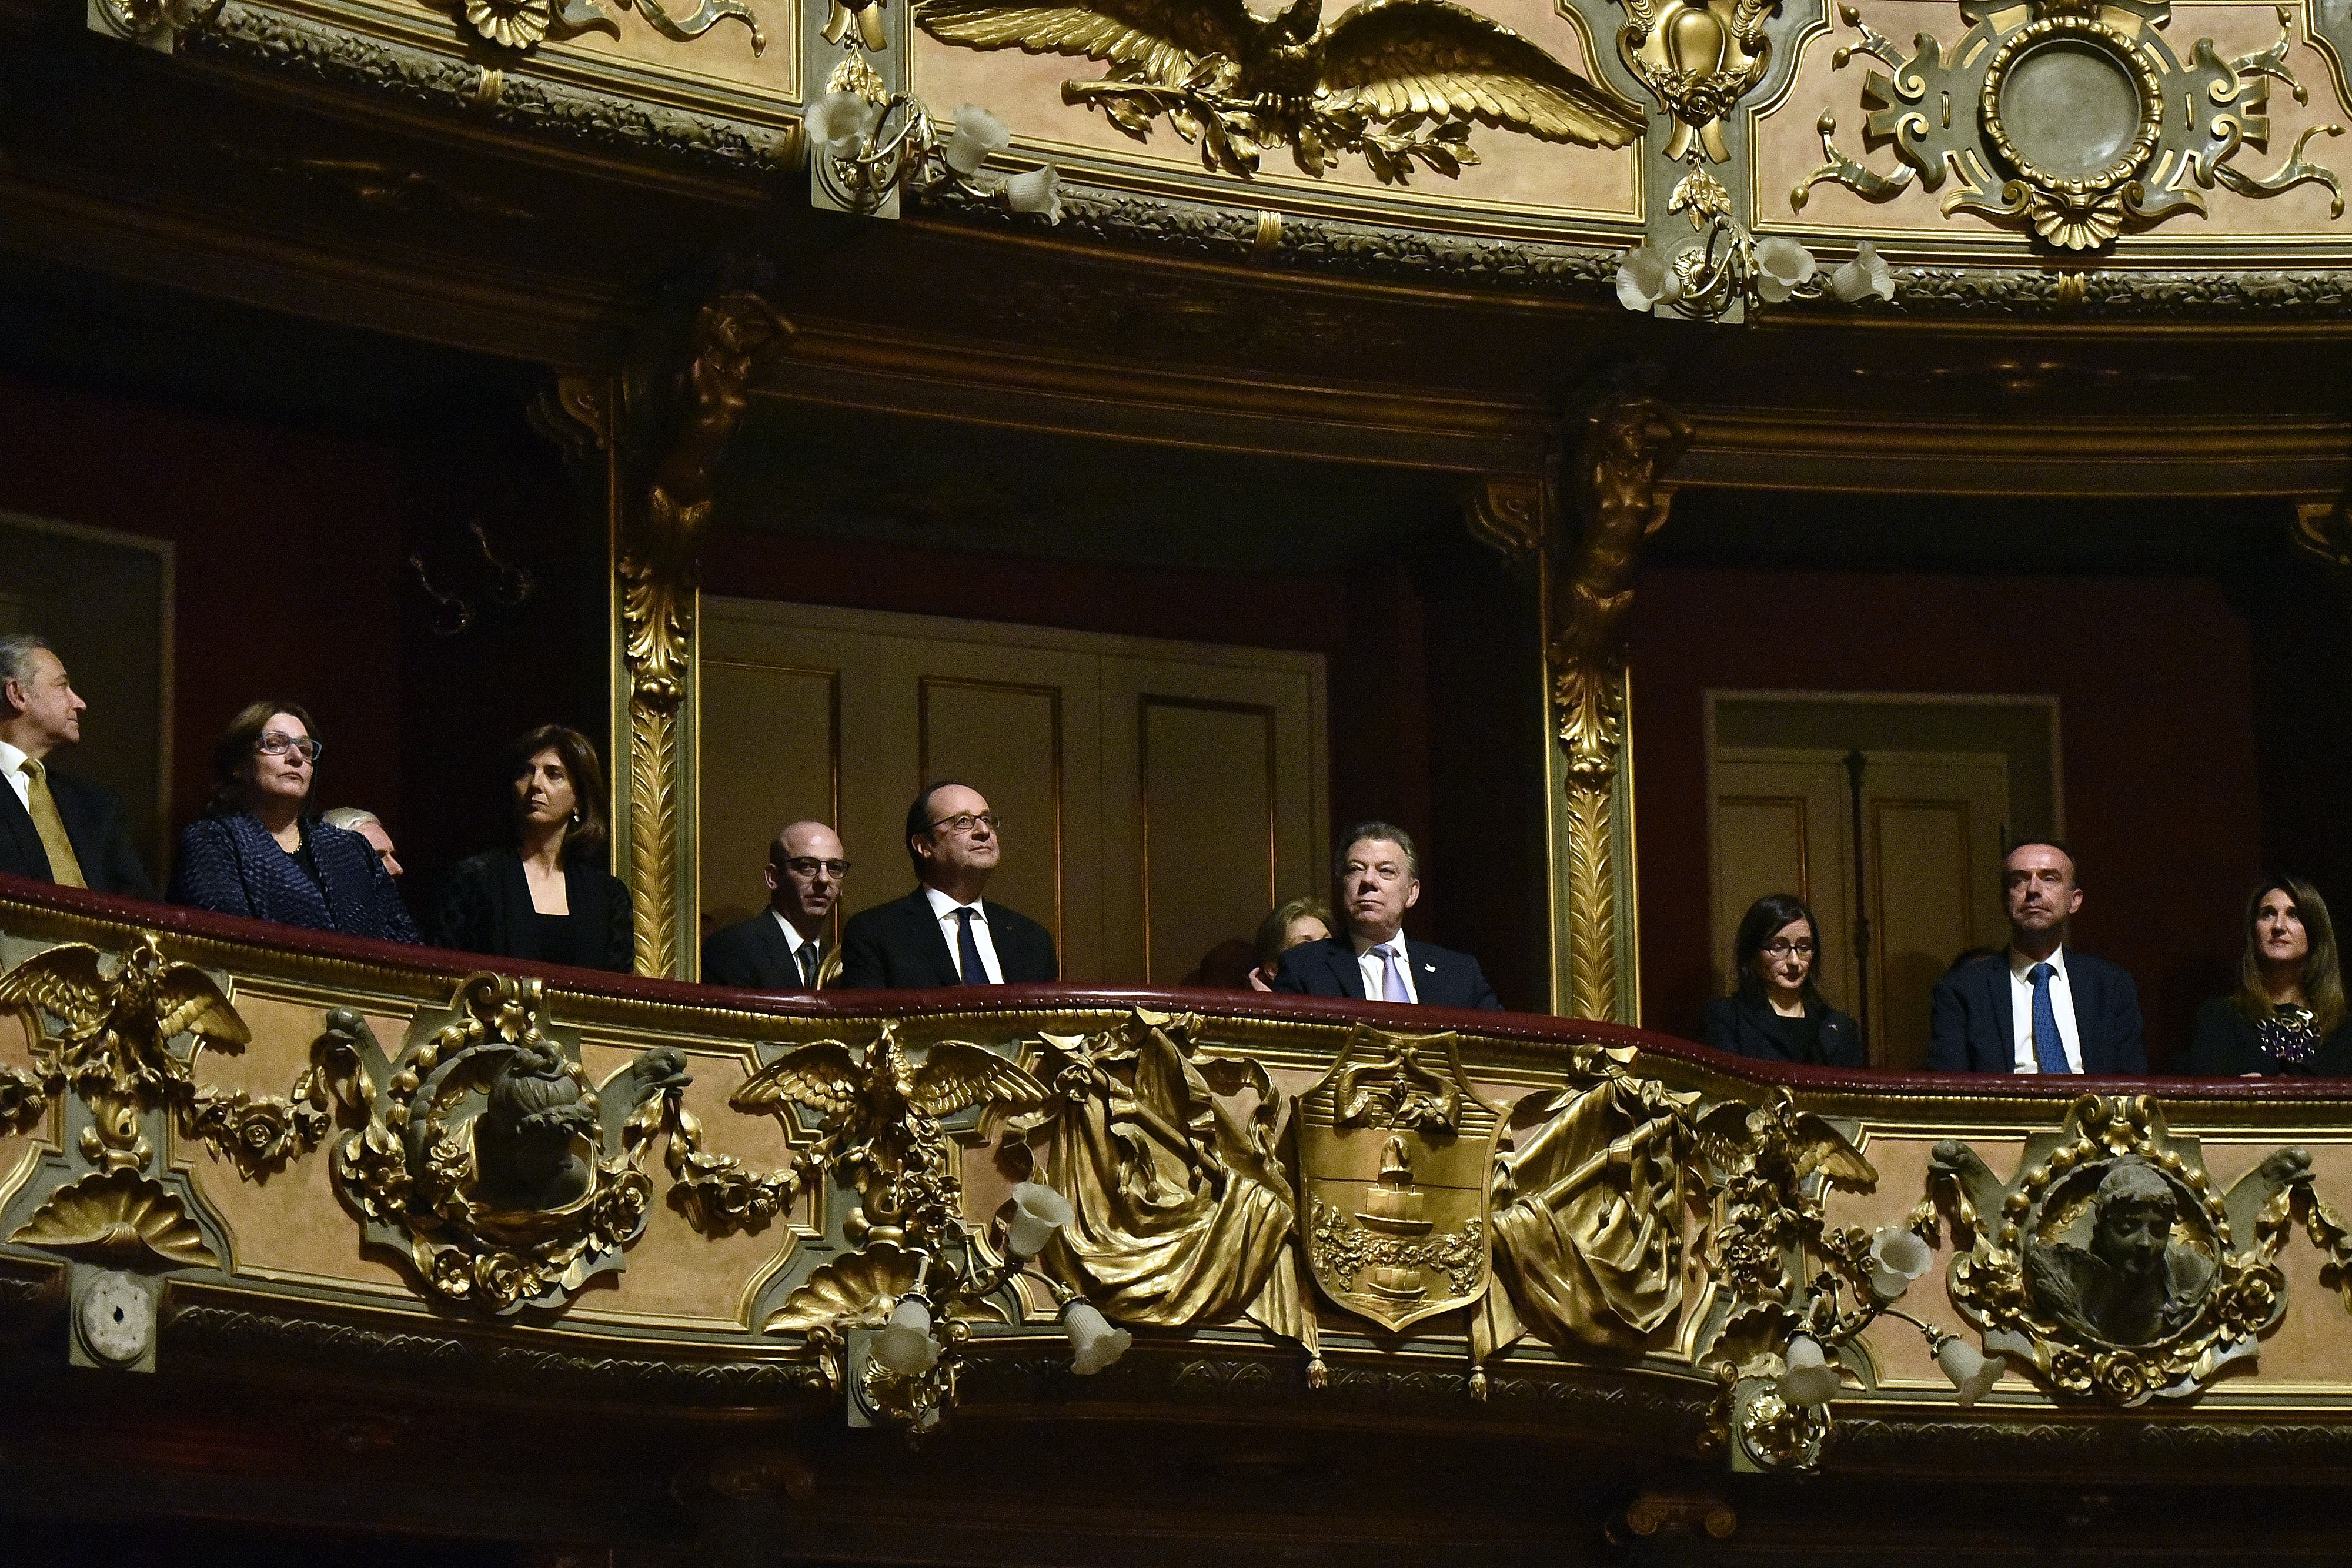 Canciller asistió al evento artístico del Año Colombia-Francia 2017 en el teatro Colón, el cual estuvo presidido por los Presidentes Juan Manuel Santos y Francois Hollande